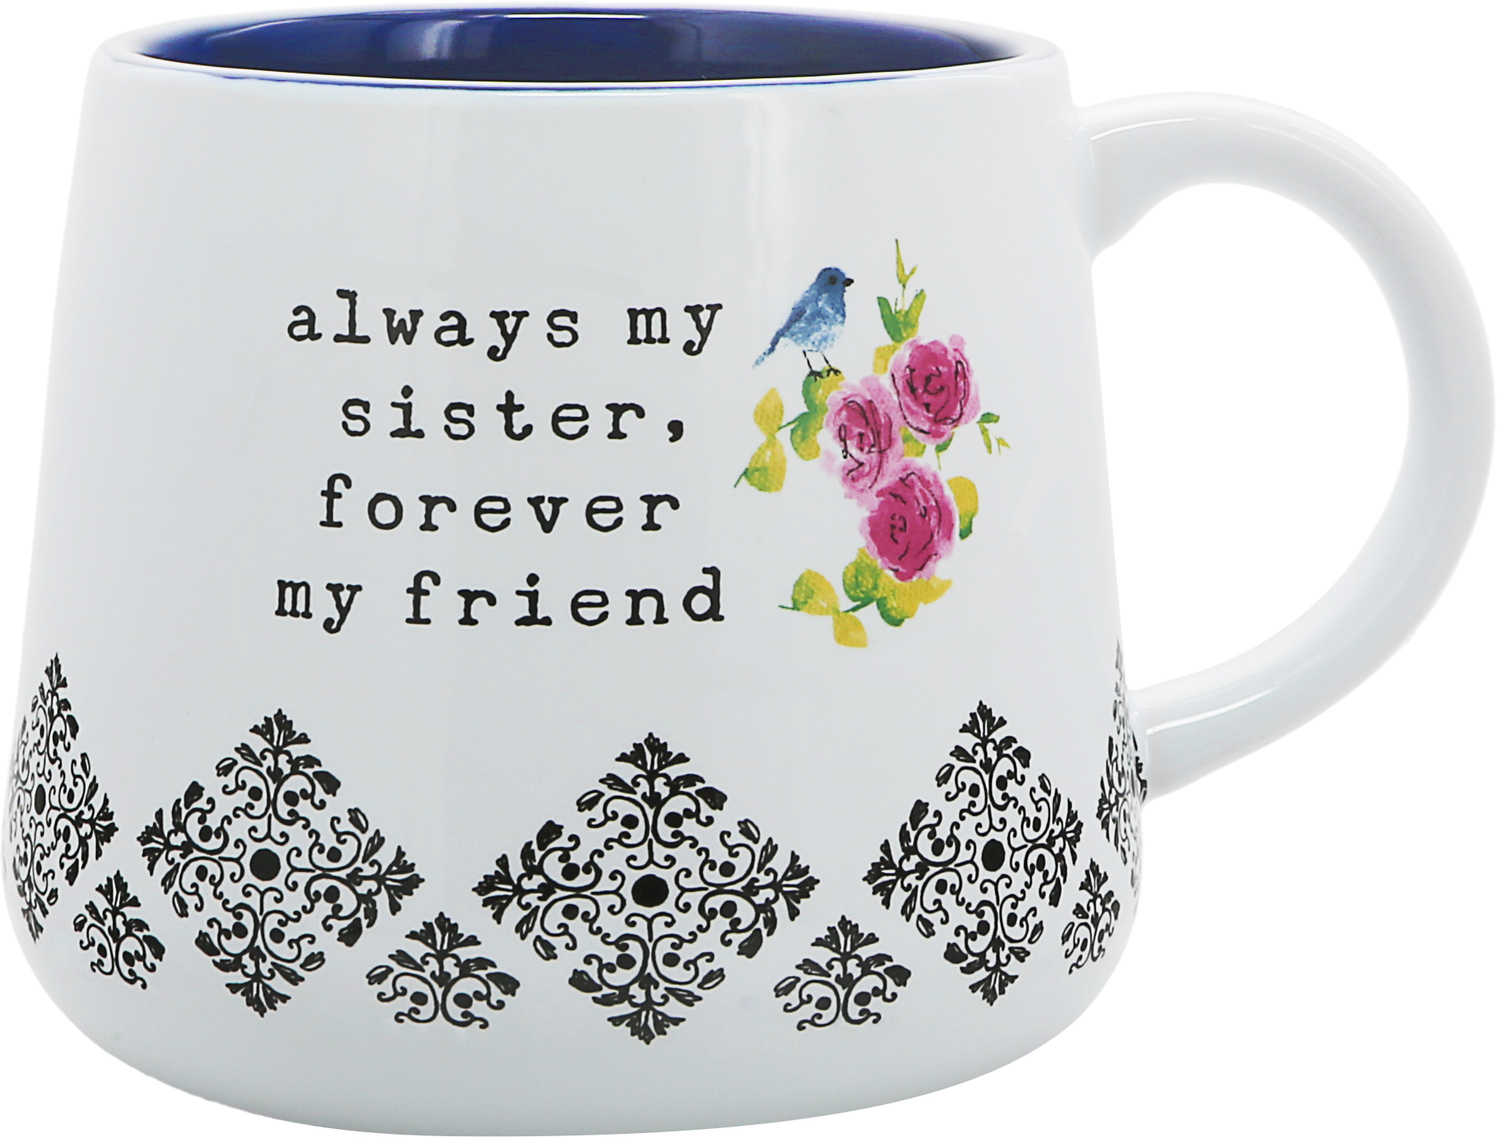 Sister by You Make Me Smile -ALW - Sister - 18 oz Mug